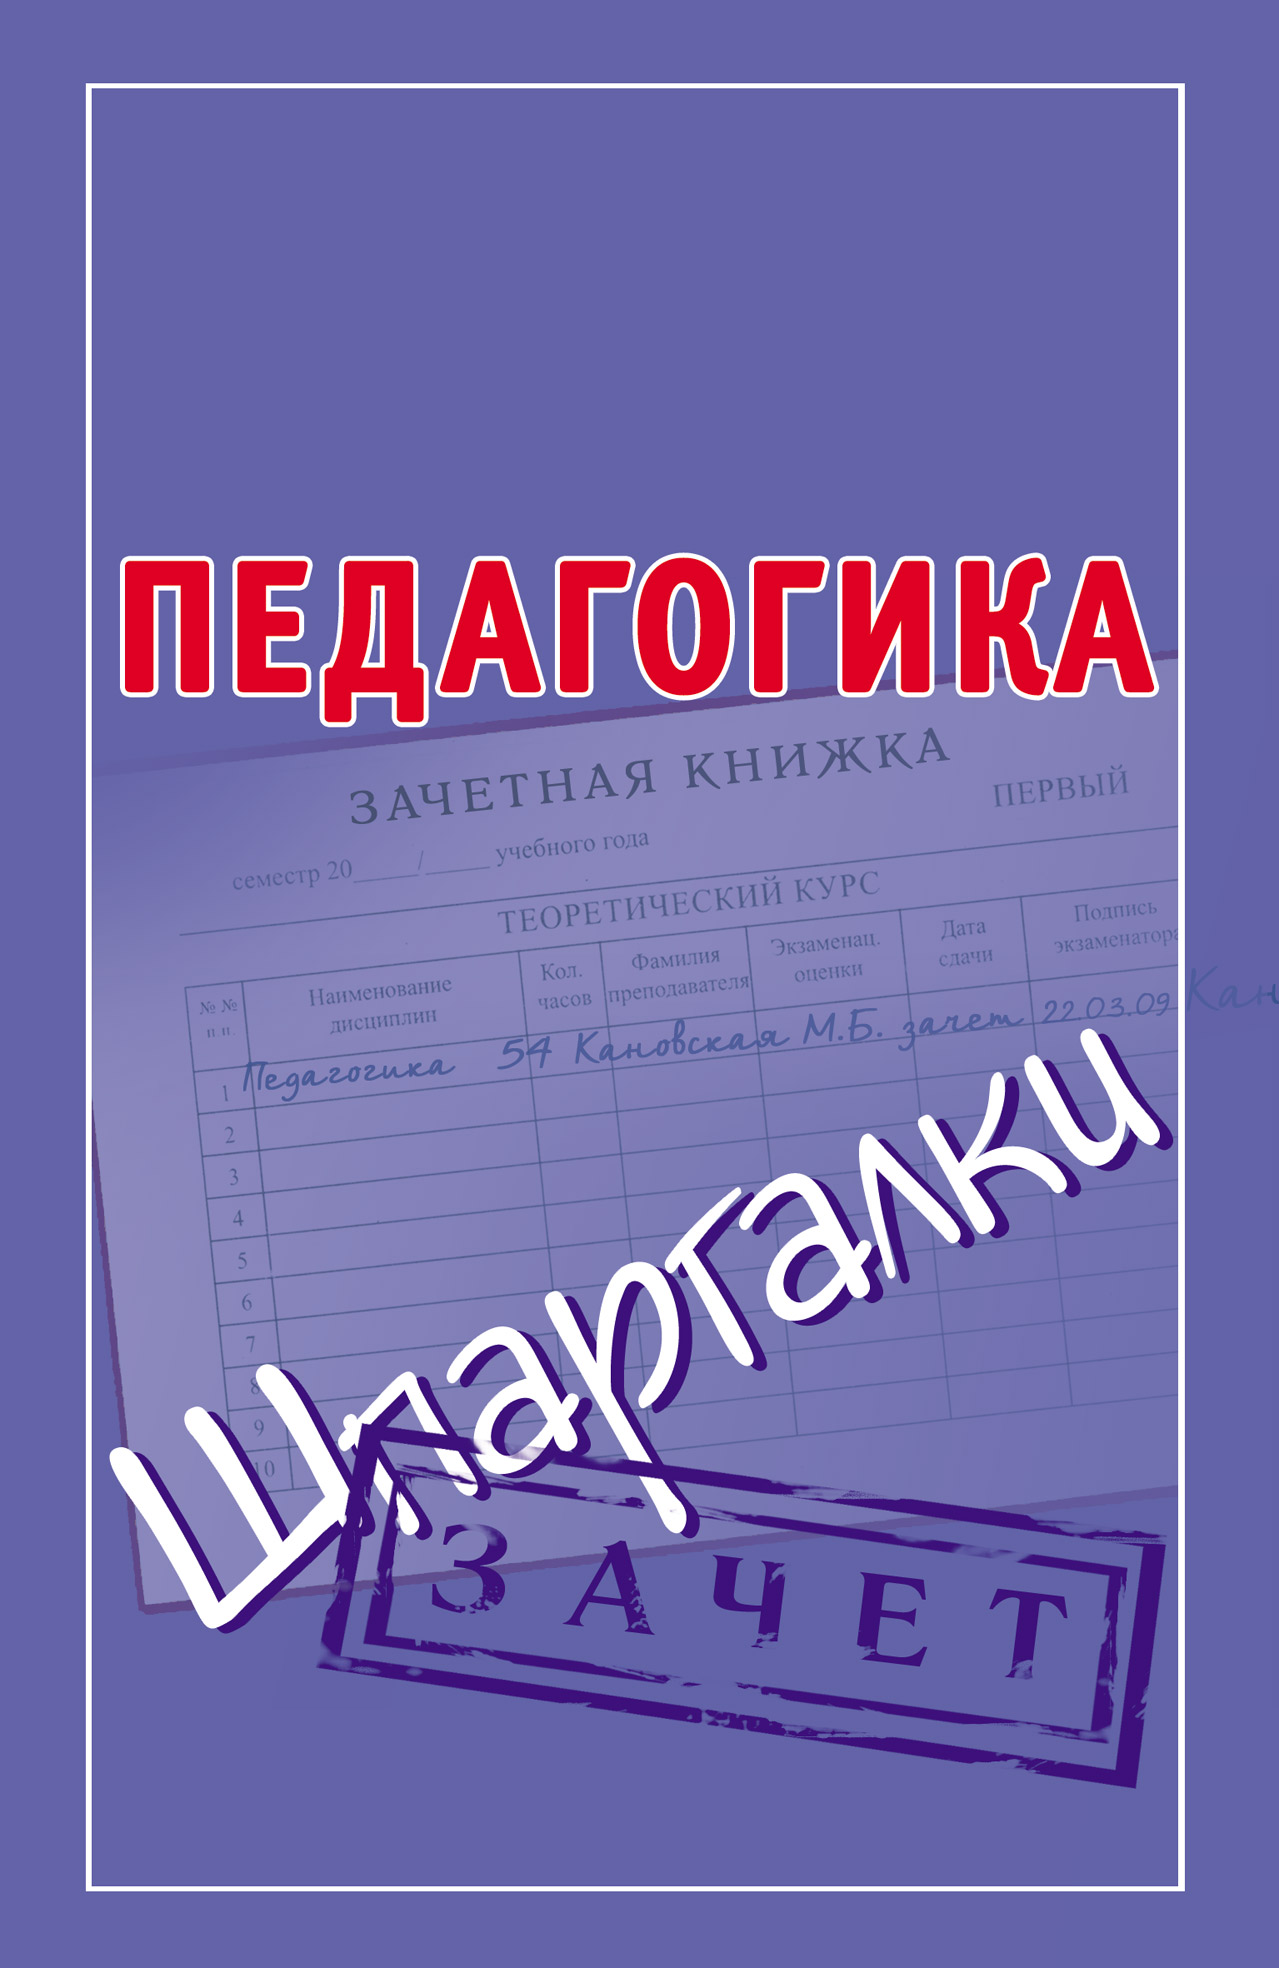 Книга Педагогика. Шпаргалки из серии Шпаргалки, созданная Мария Кановская, может относится к жанру Педагогика. Стоимость книги Педагогика. Шпаргалки  с идентификатором 4603365 составляет 49.90 руб.